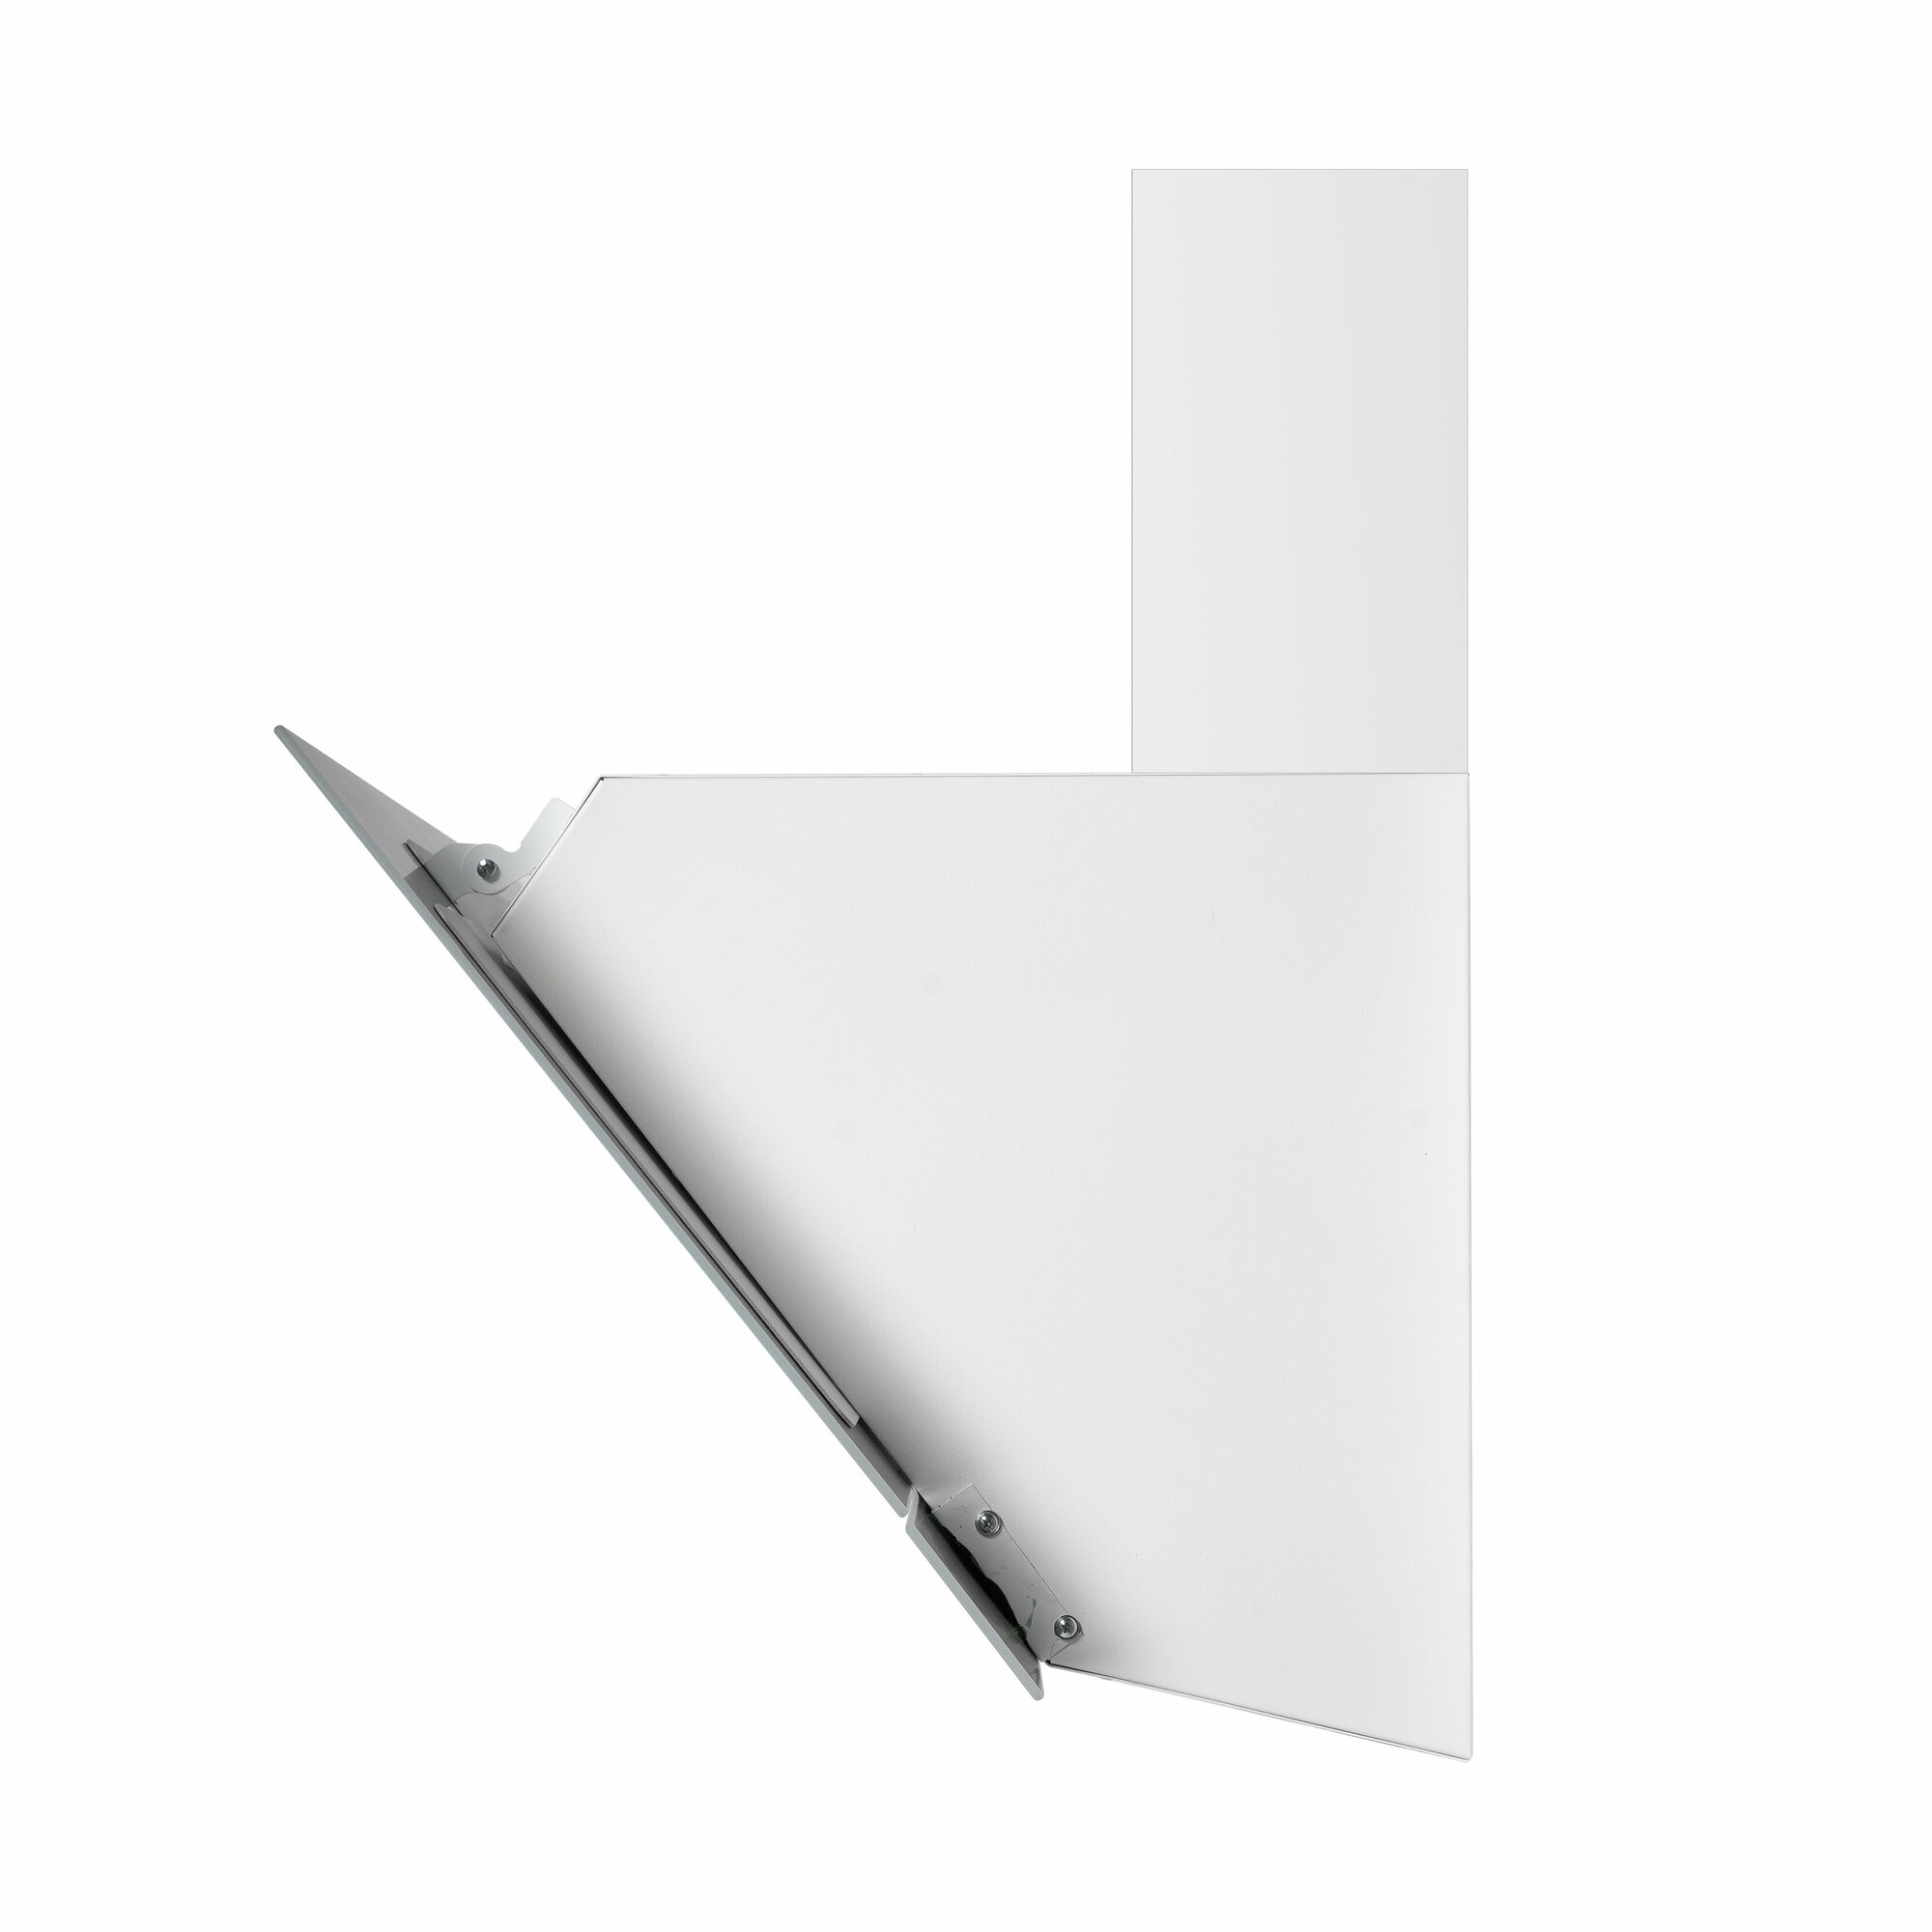 Наклонная стеклянная кухонная вытяжка DeLonghi Linea 915 BB, 90 см, белая